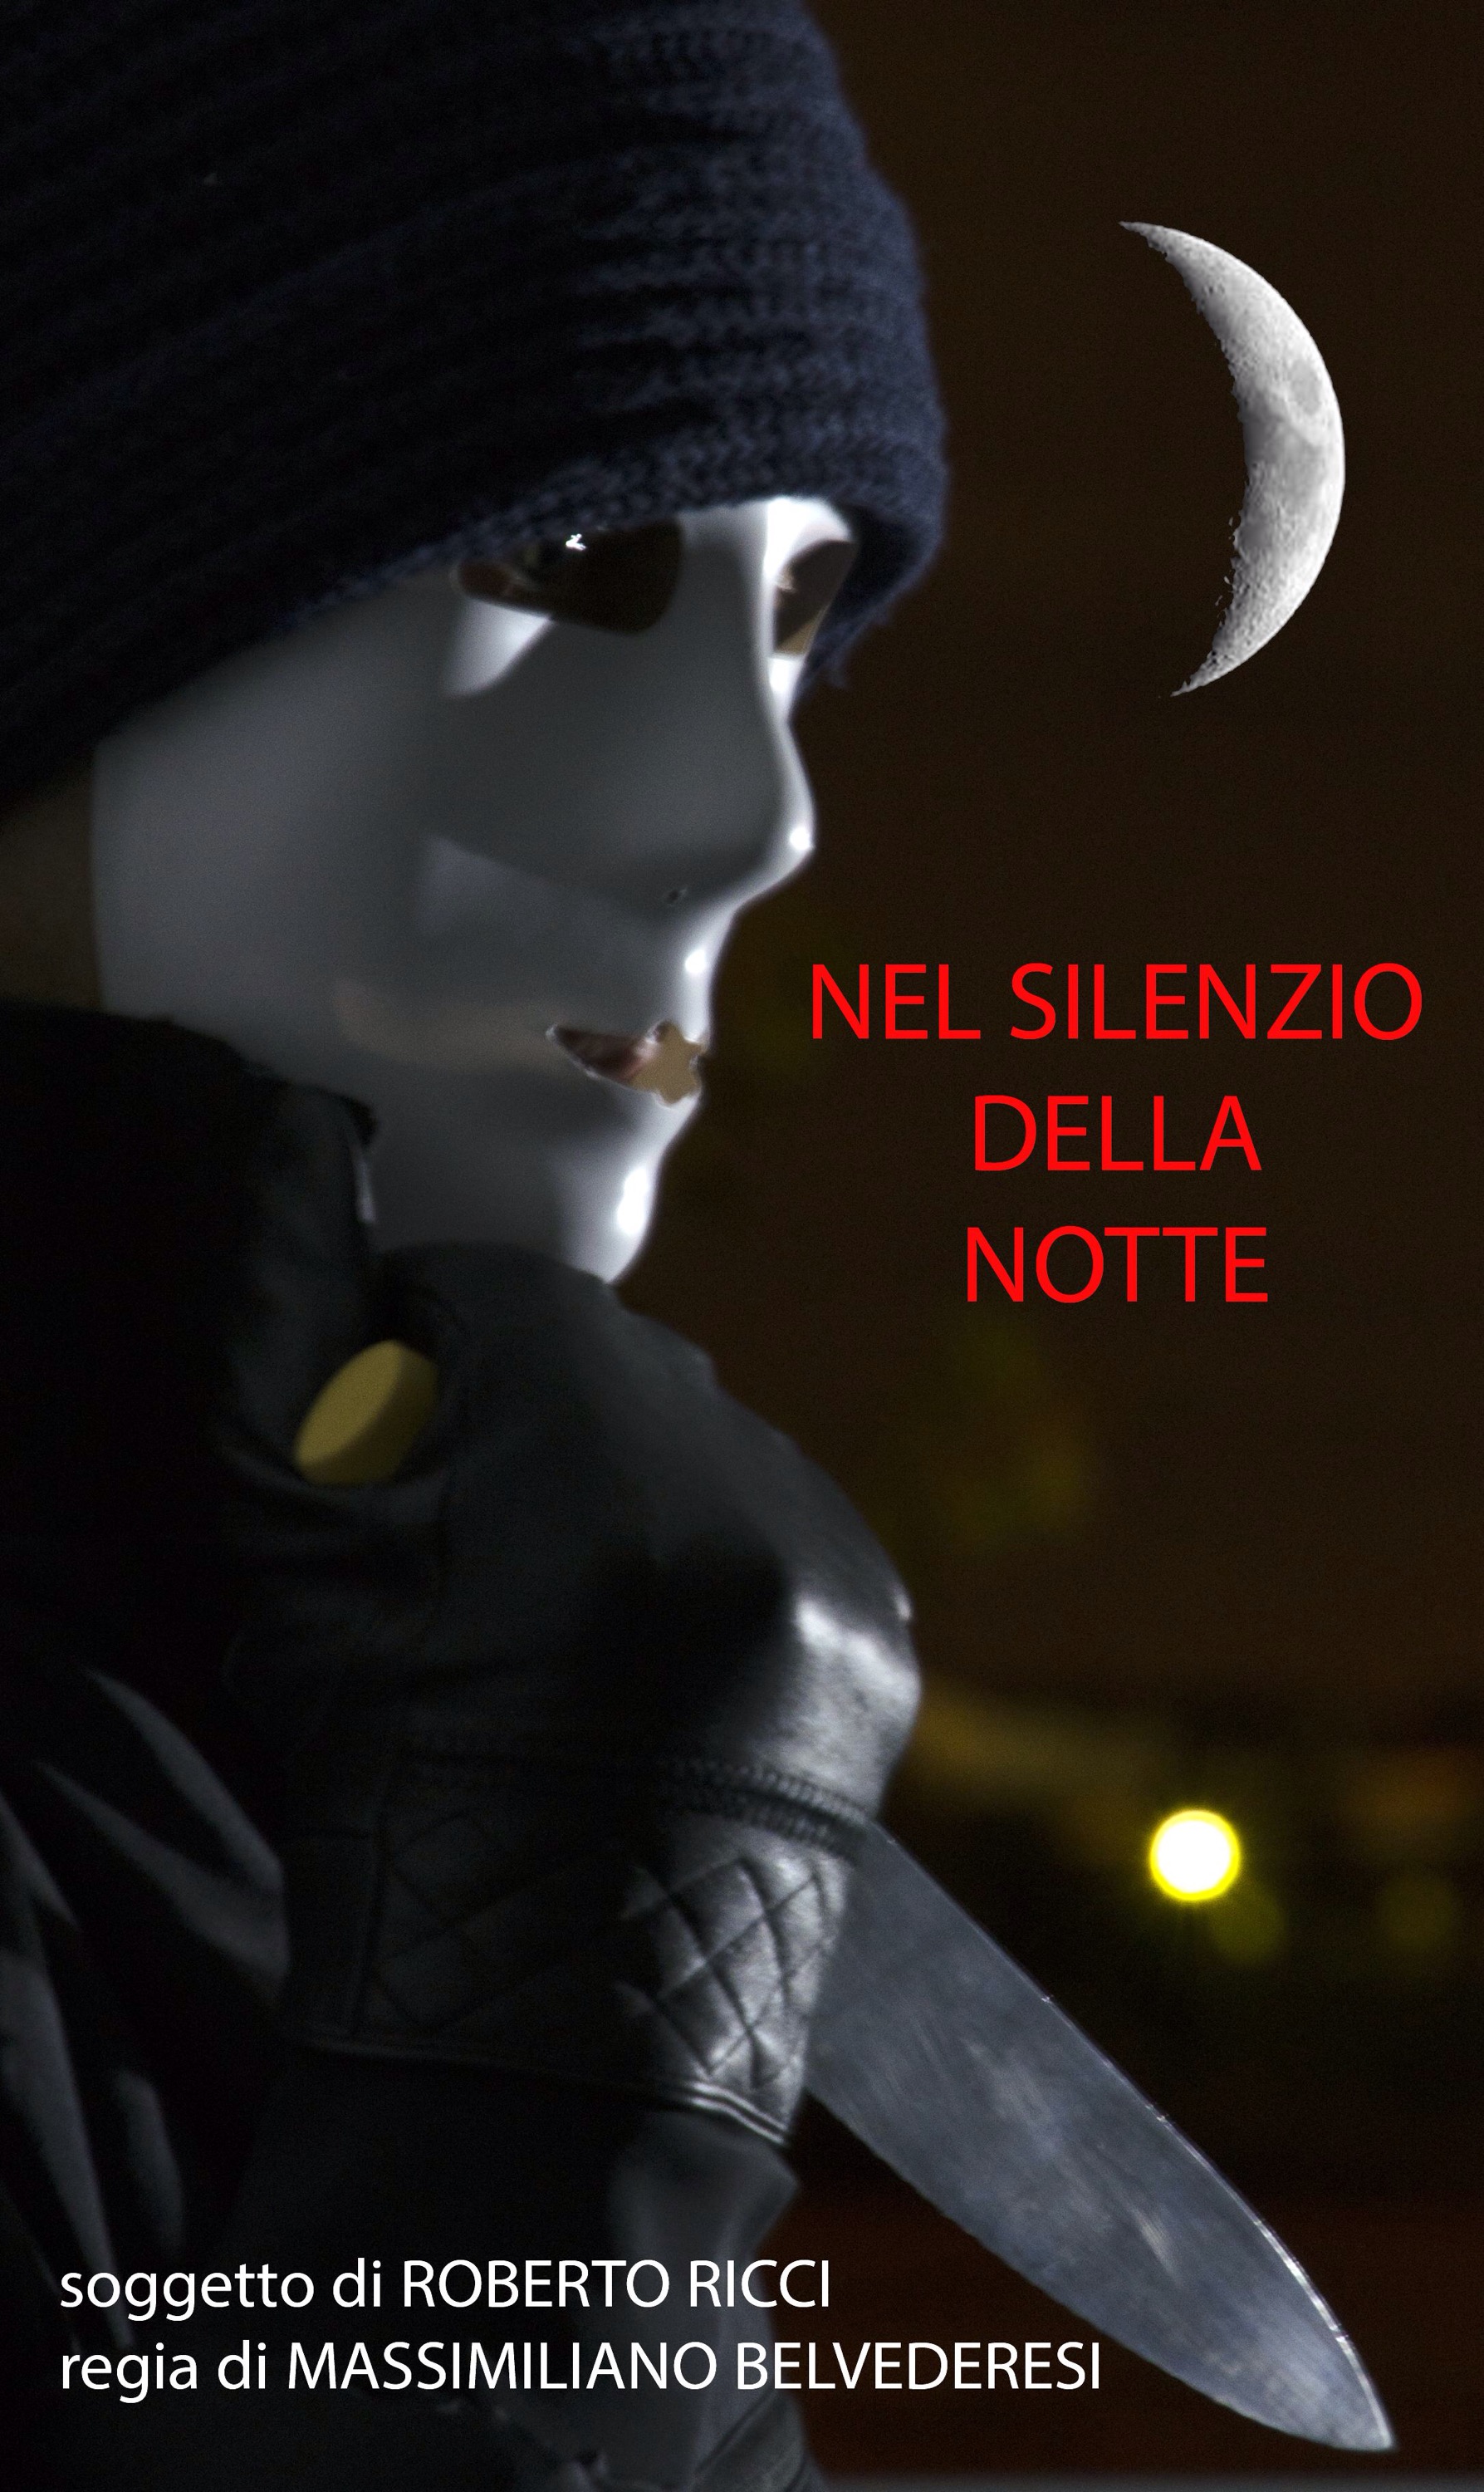 Un thriller tutto “made in Ancona”